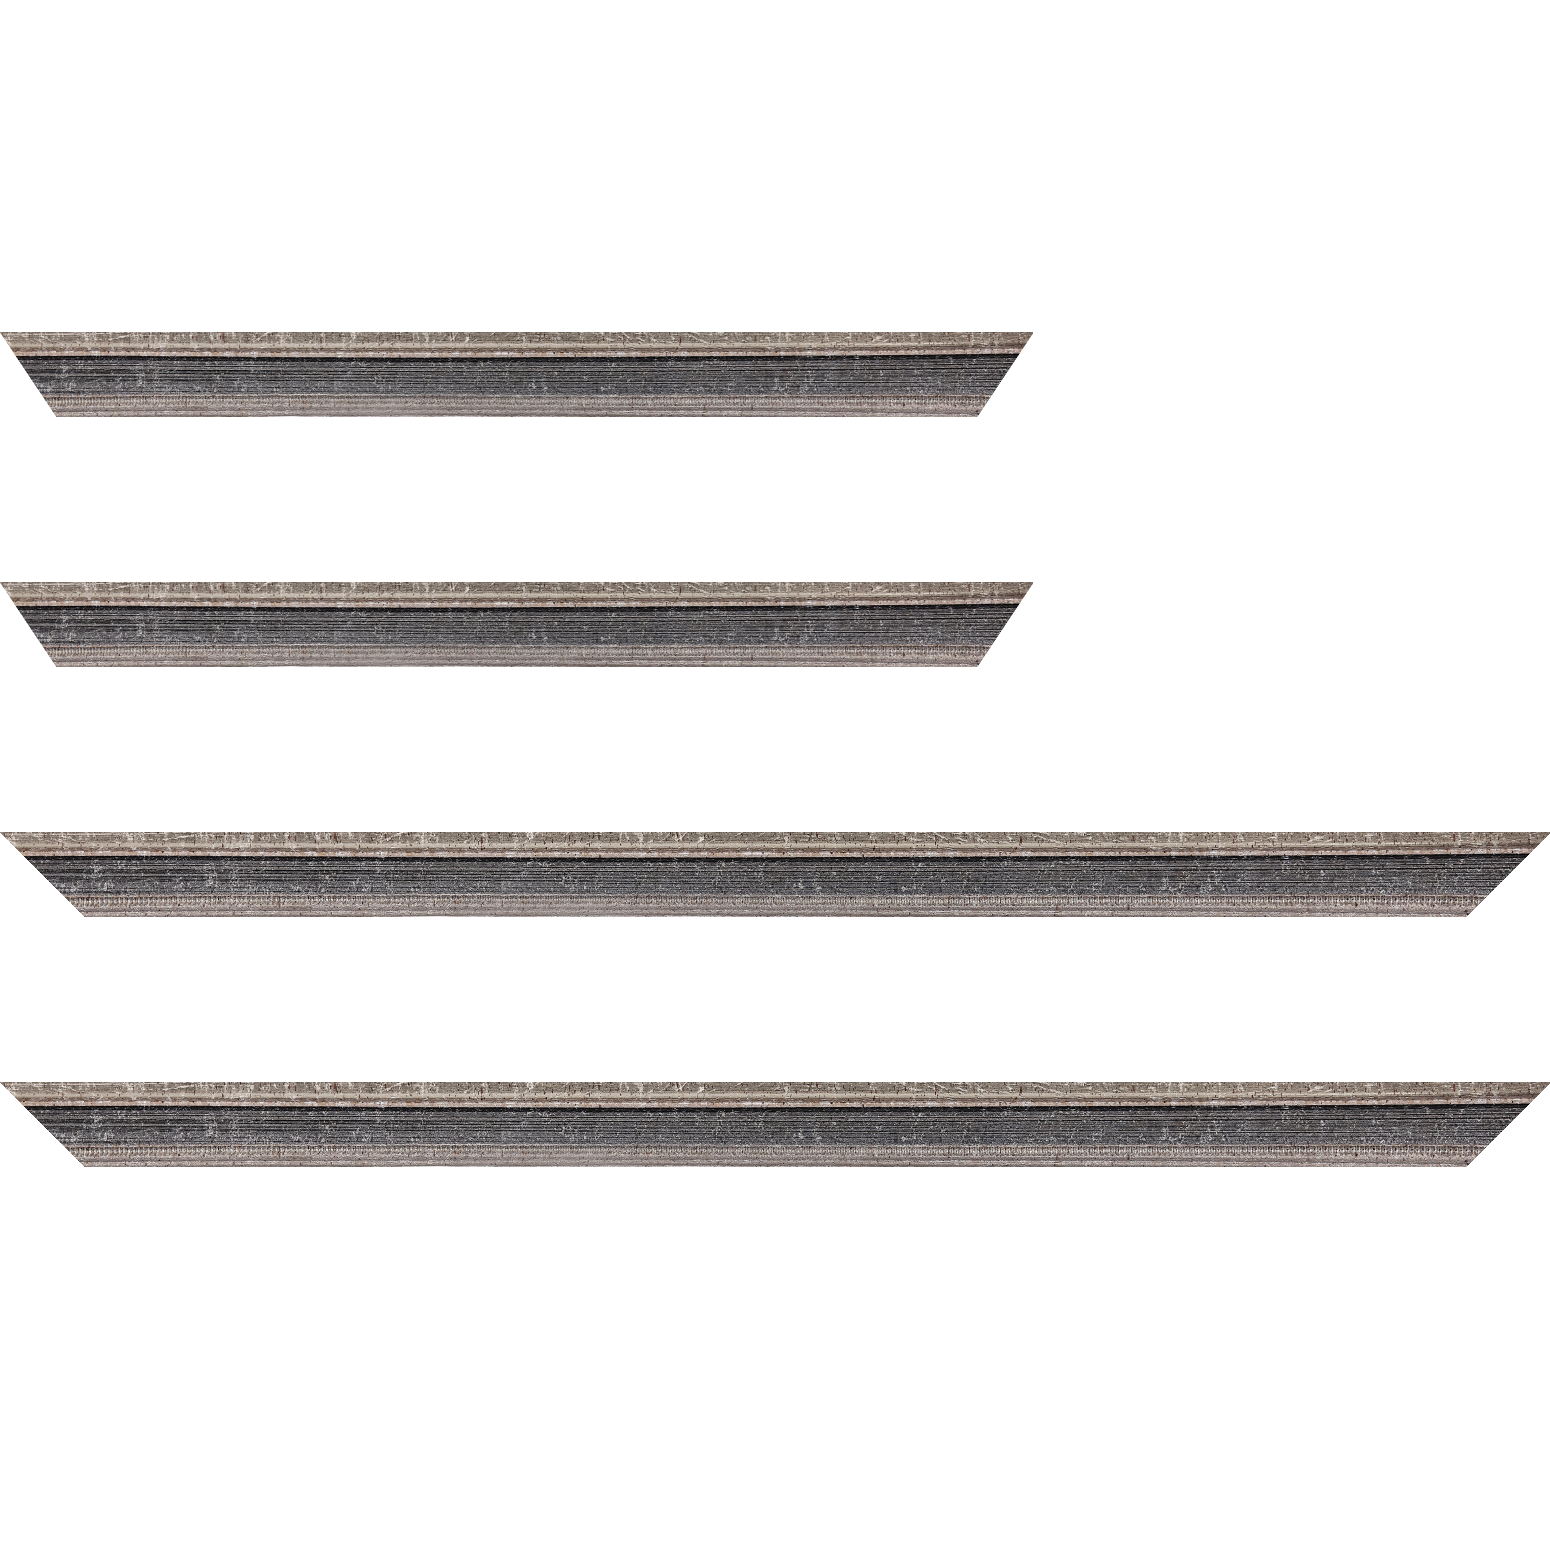 Baguette bois profil incurvé largeur 2.4cm argent antique gorge gris noirci vieilli filet perle argent - 40x60